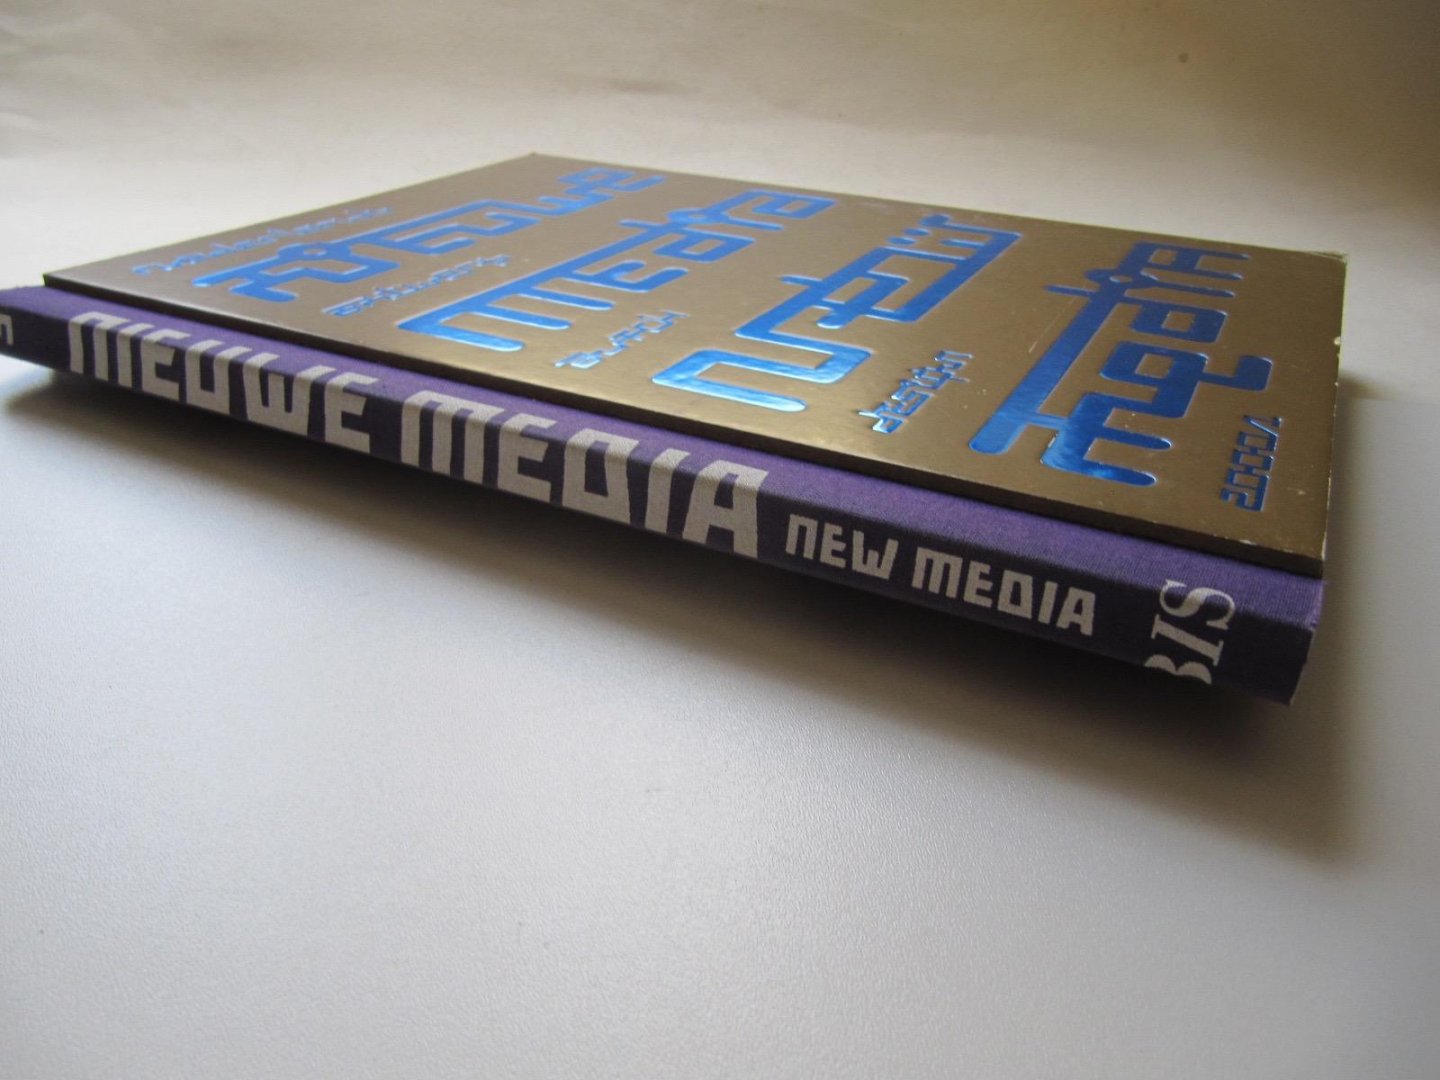 Redactie - Nederlands ontwerp = Dutch design 2000-2001 / deel 3 Nieuwe media / New media